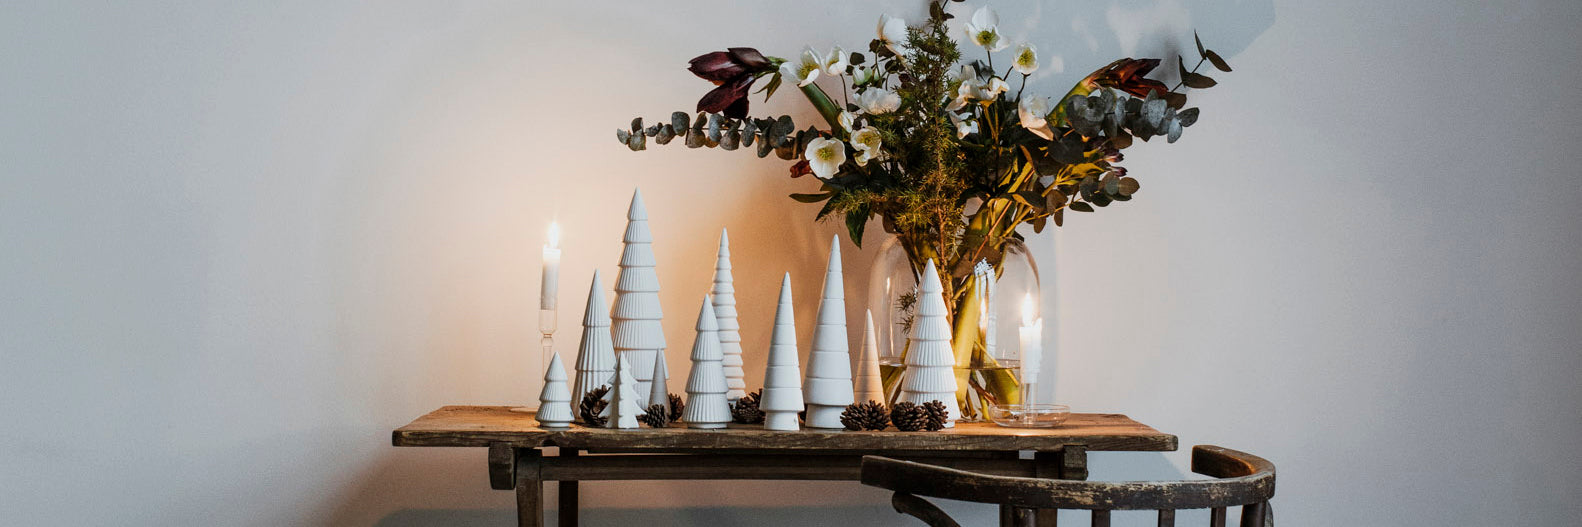 Weihnachtsbäume aus Keramik in weiß von der Marke Storefactory für die Weihnachtsdeko